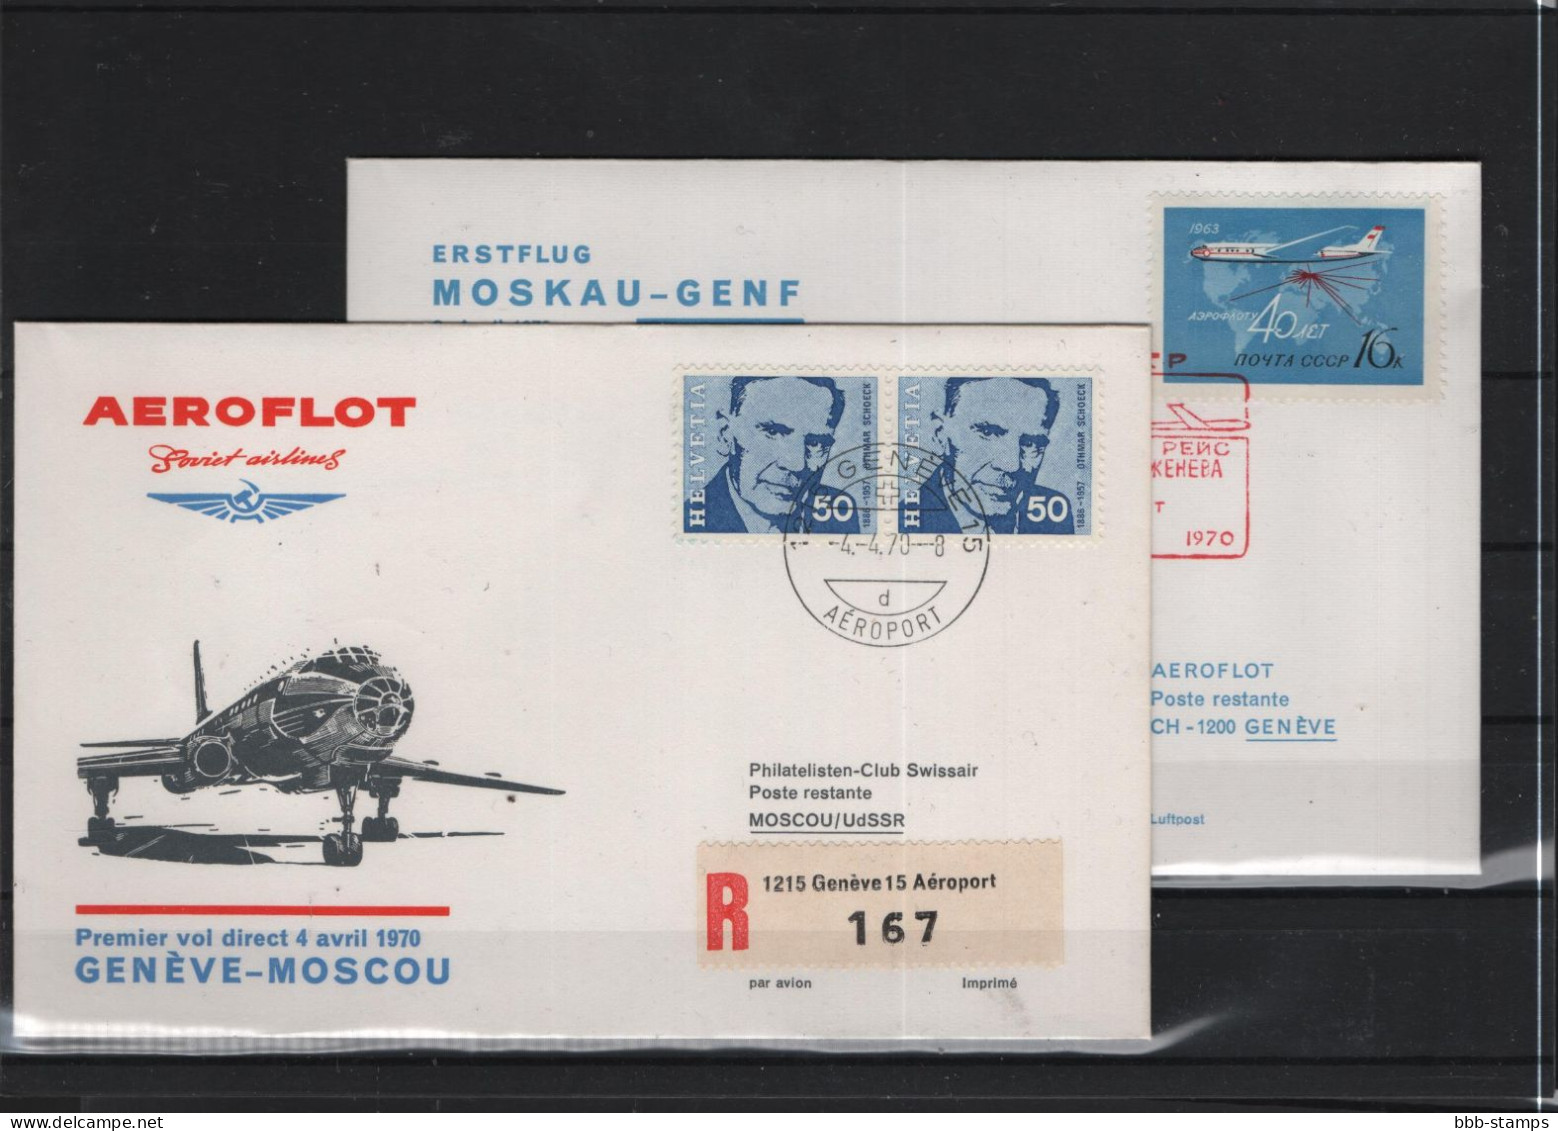 Schweiz Luftpost FFC Aeroflot 3.4.1970 Genf - Moskau VV - First Flight Covers